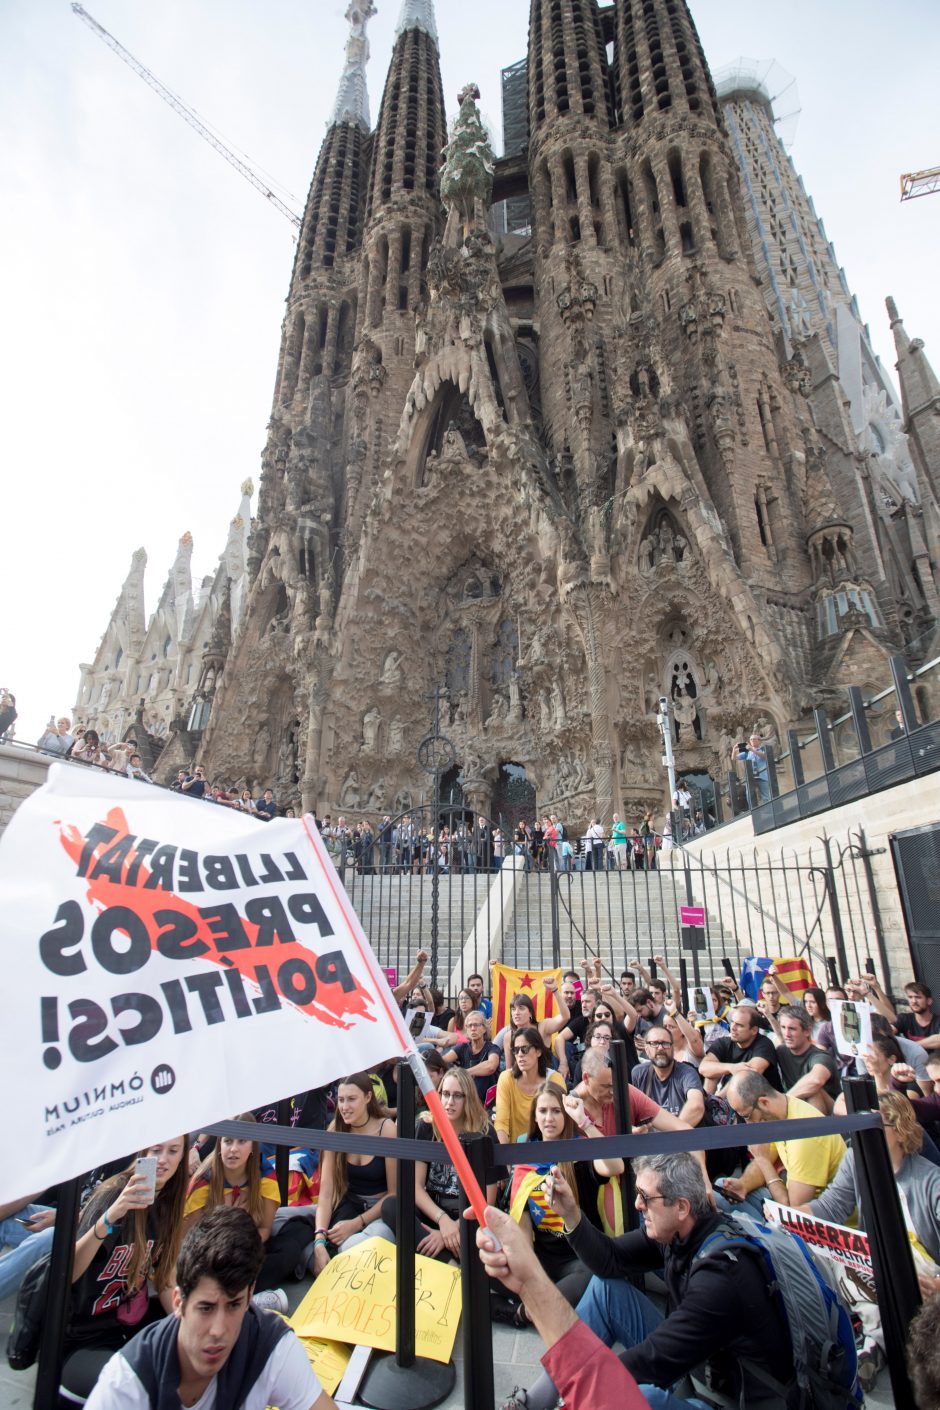 Barselonoje į gatves išėjo daugiau kaip pusė milijono žmonių